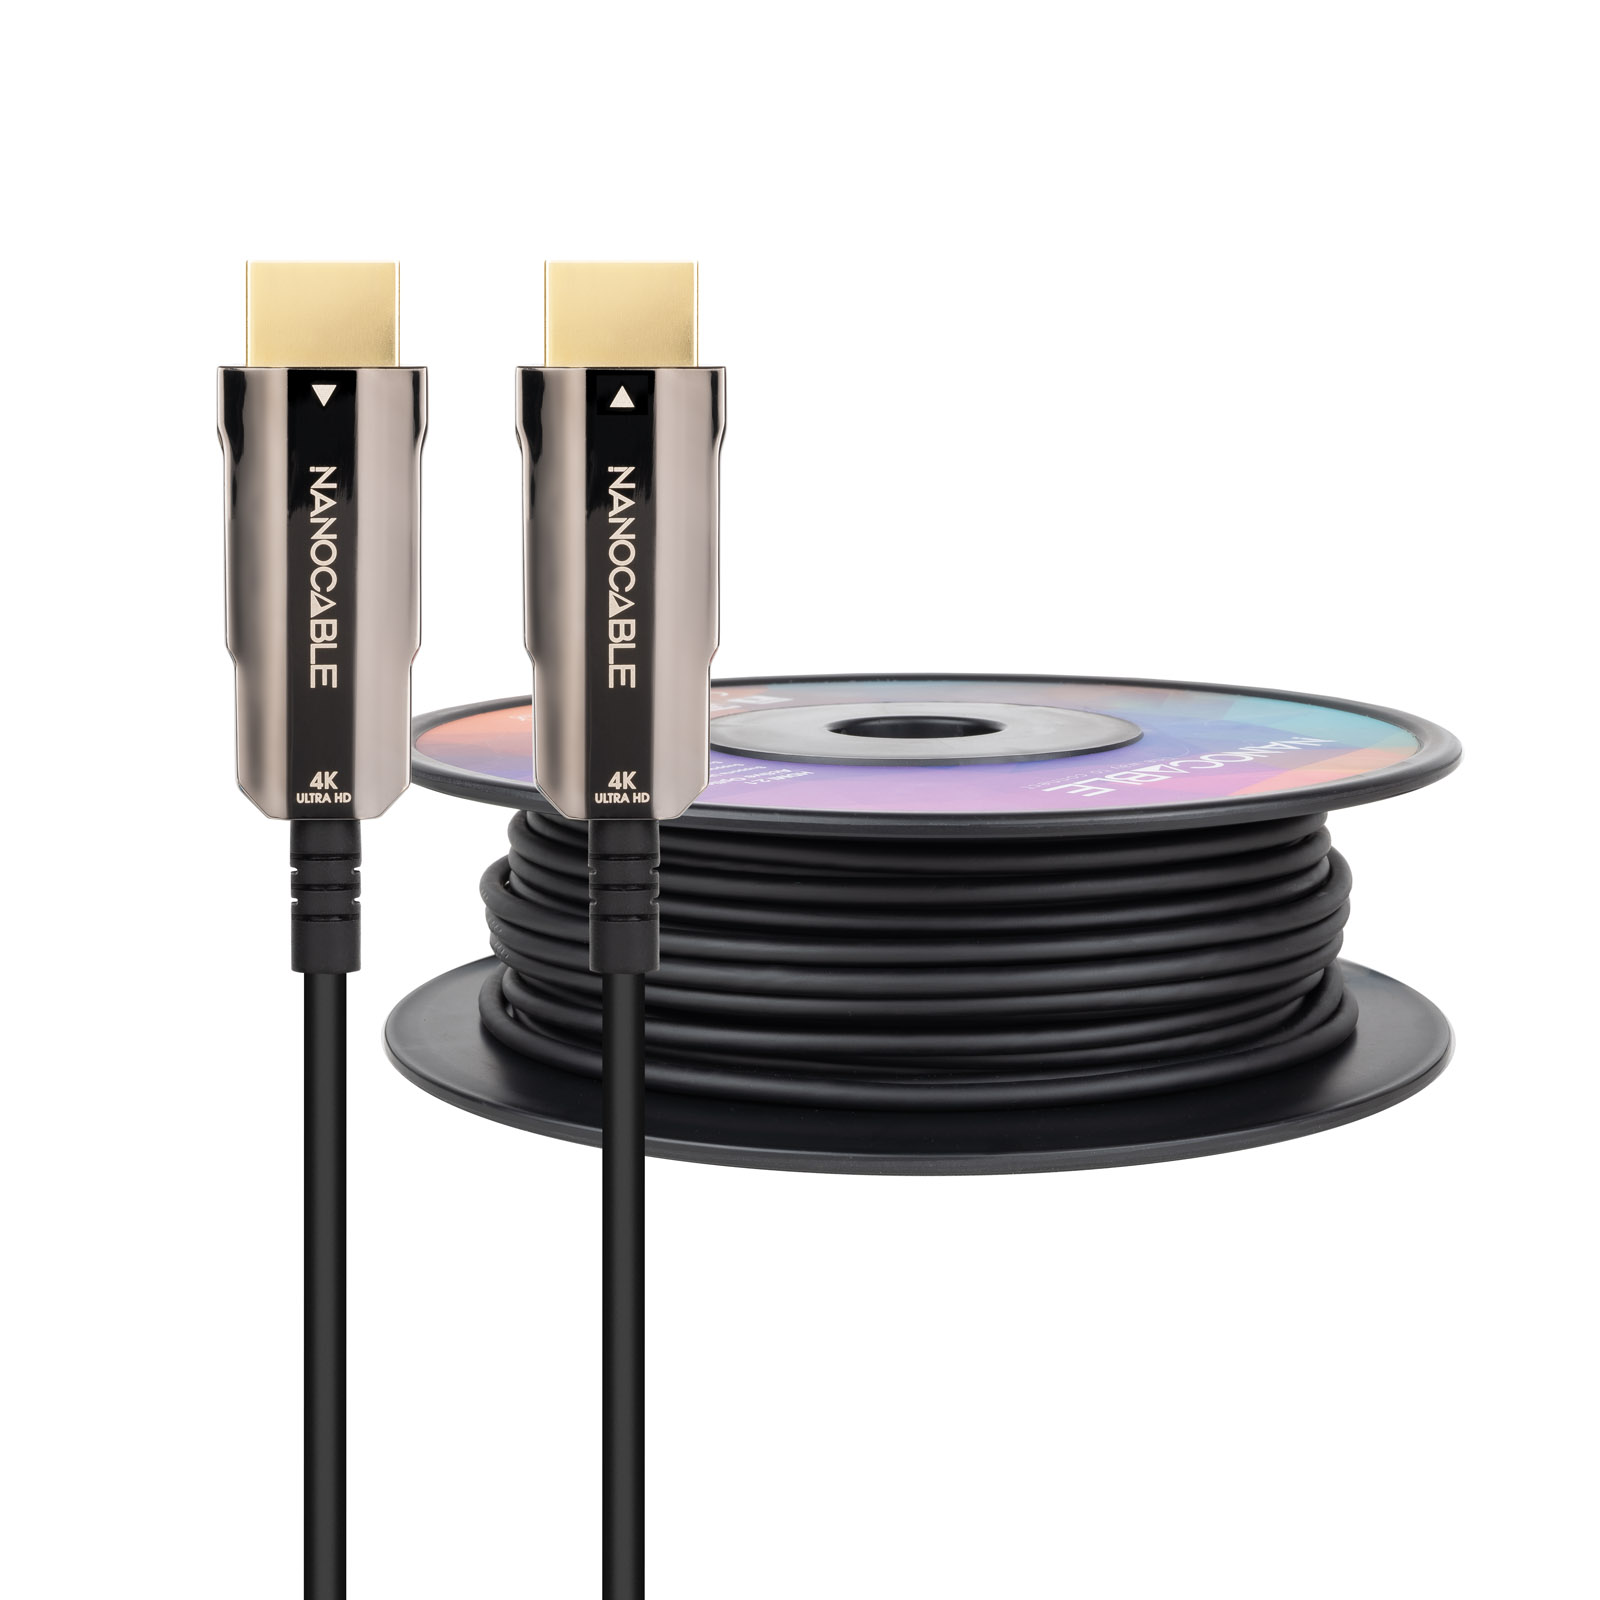 Nanocable Câble HDMI v2.0 Mâle vers HDMI v2.0 Mâle 30m - 4K@60Hz 18Gbps - Couleur Noir